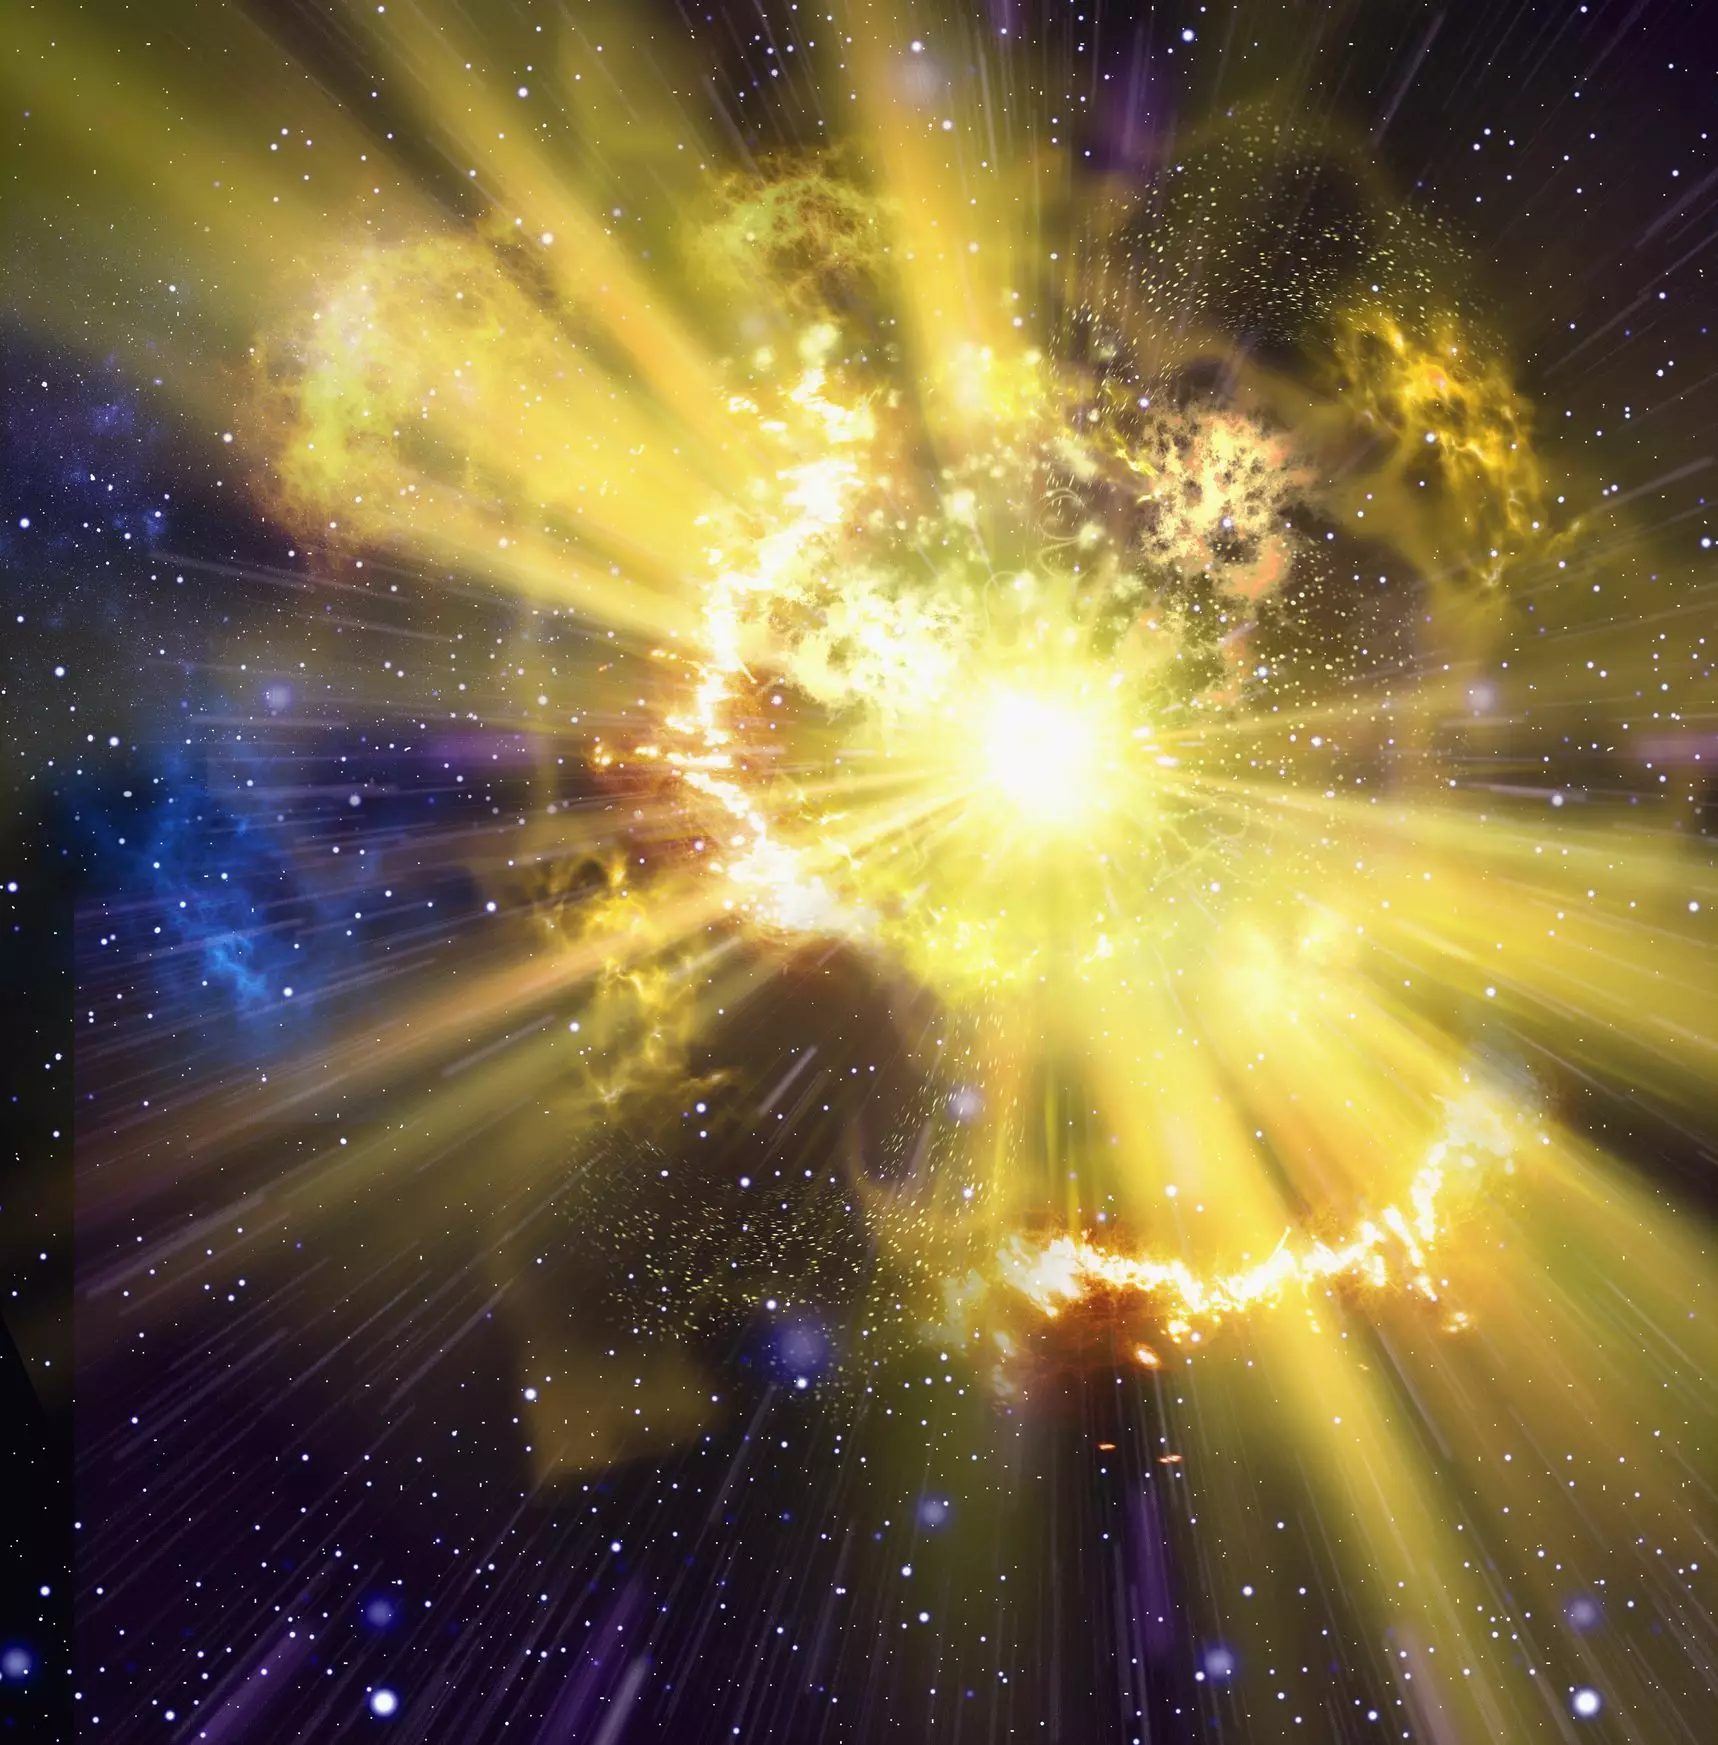 При рождении звезда была в 100 раз больше массы Солнца